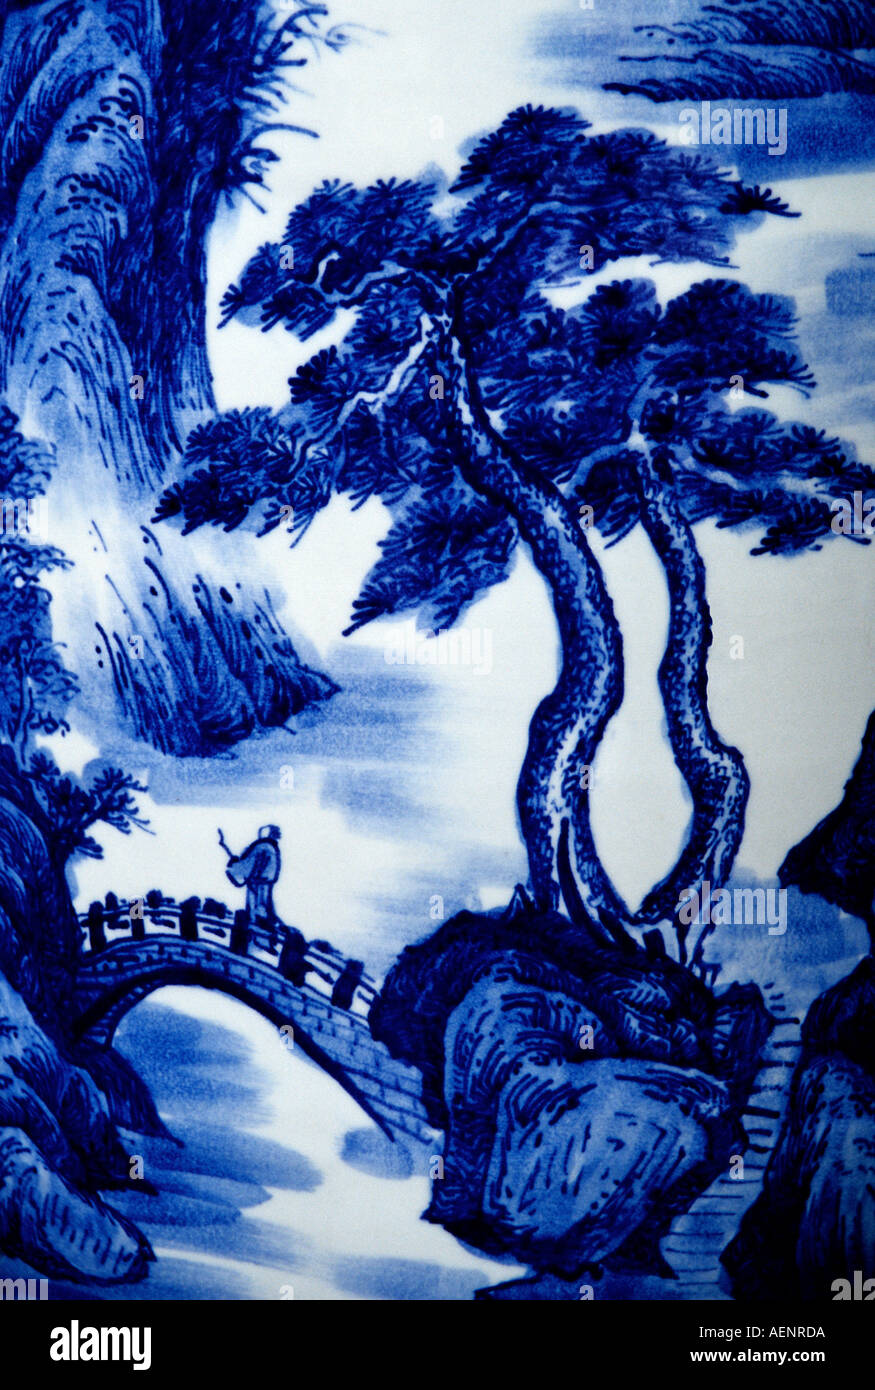 Provinz Anhui China traditionelle Malerei Landschaftsgestaltung auf chinesische Porcelin vase Stockfoto